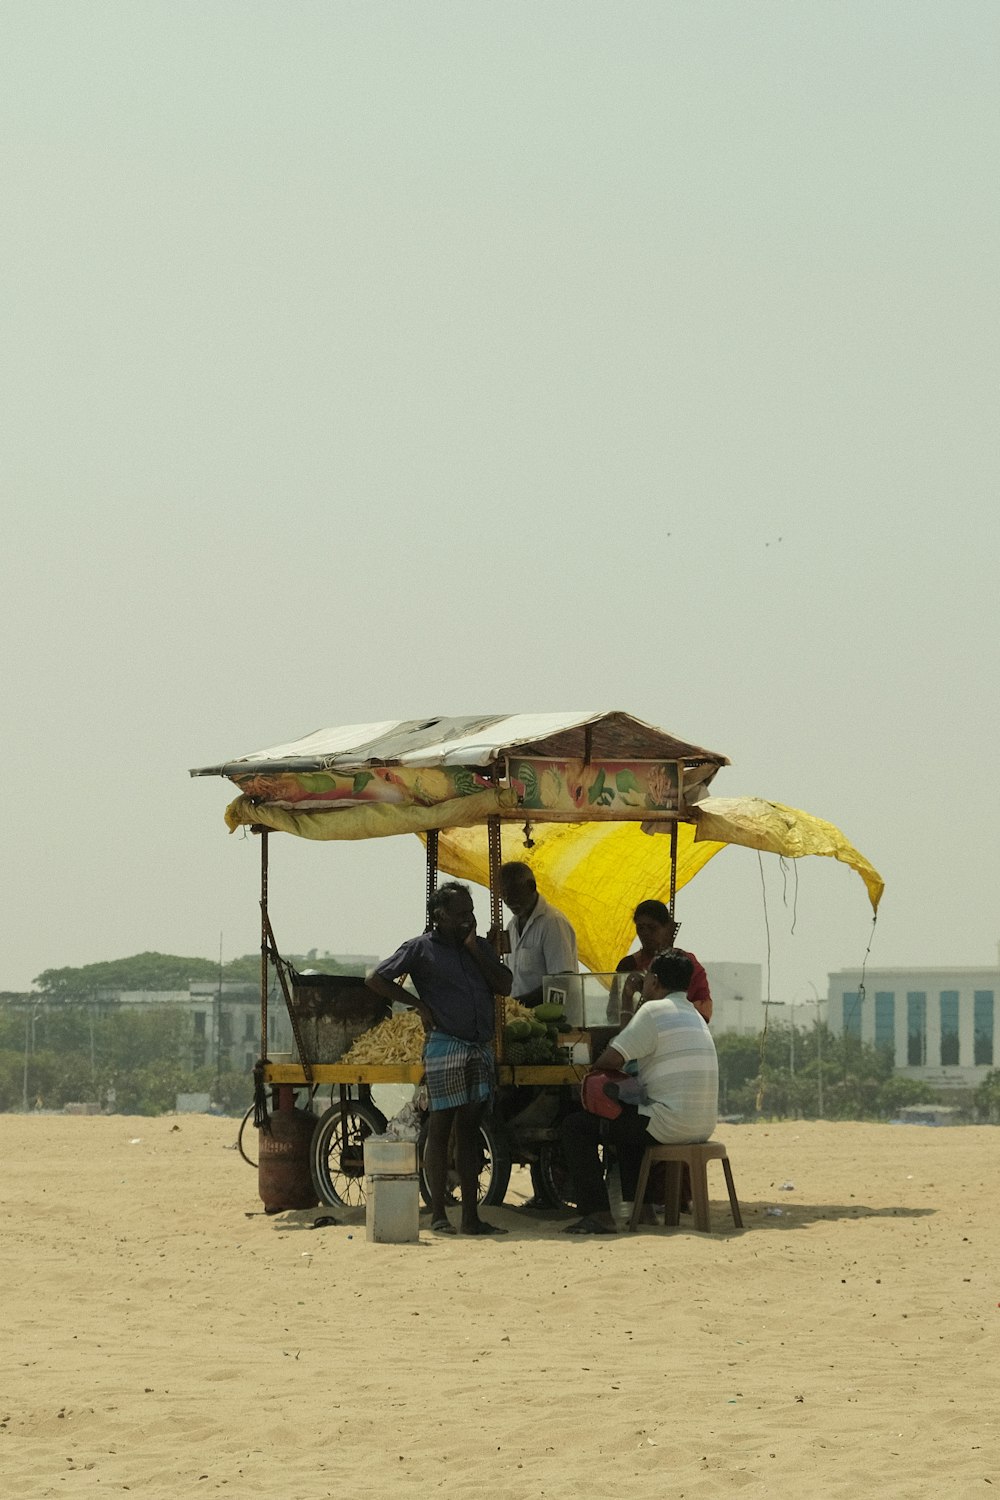 un groupe de personnes assises sous un parapluie jaune